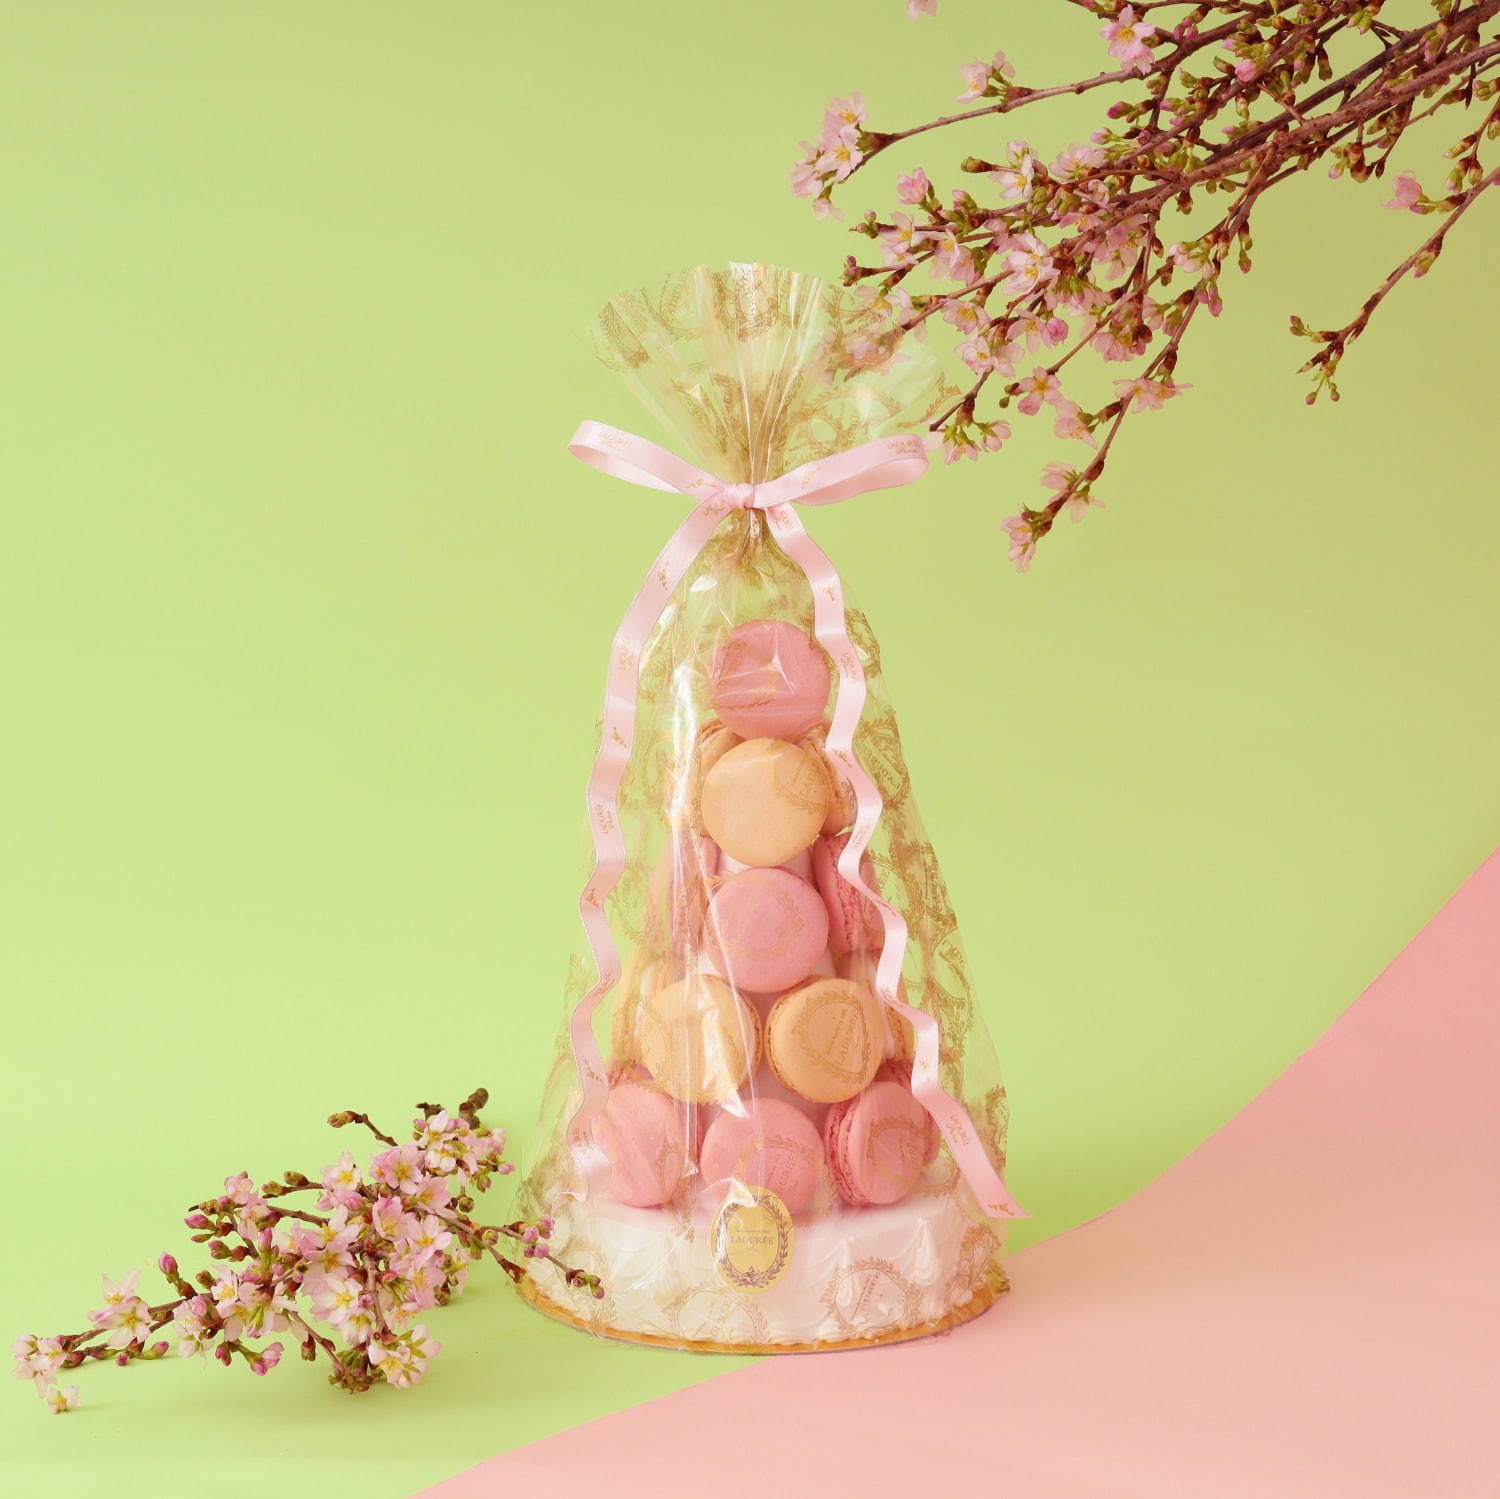 ラデュレの桜スイーツ、桜の花を飾ったショートケーキや「サクラ 